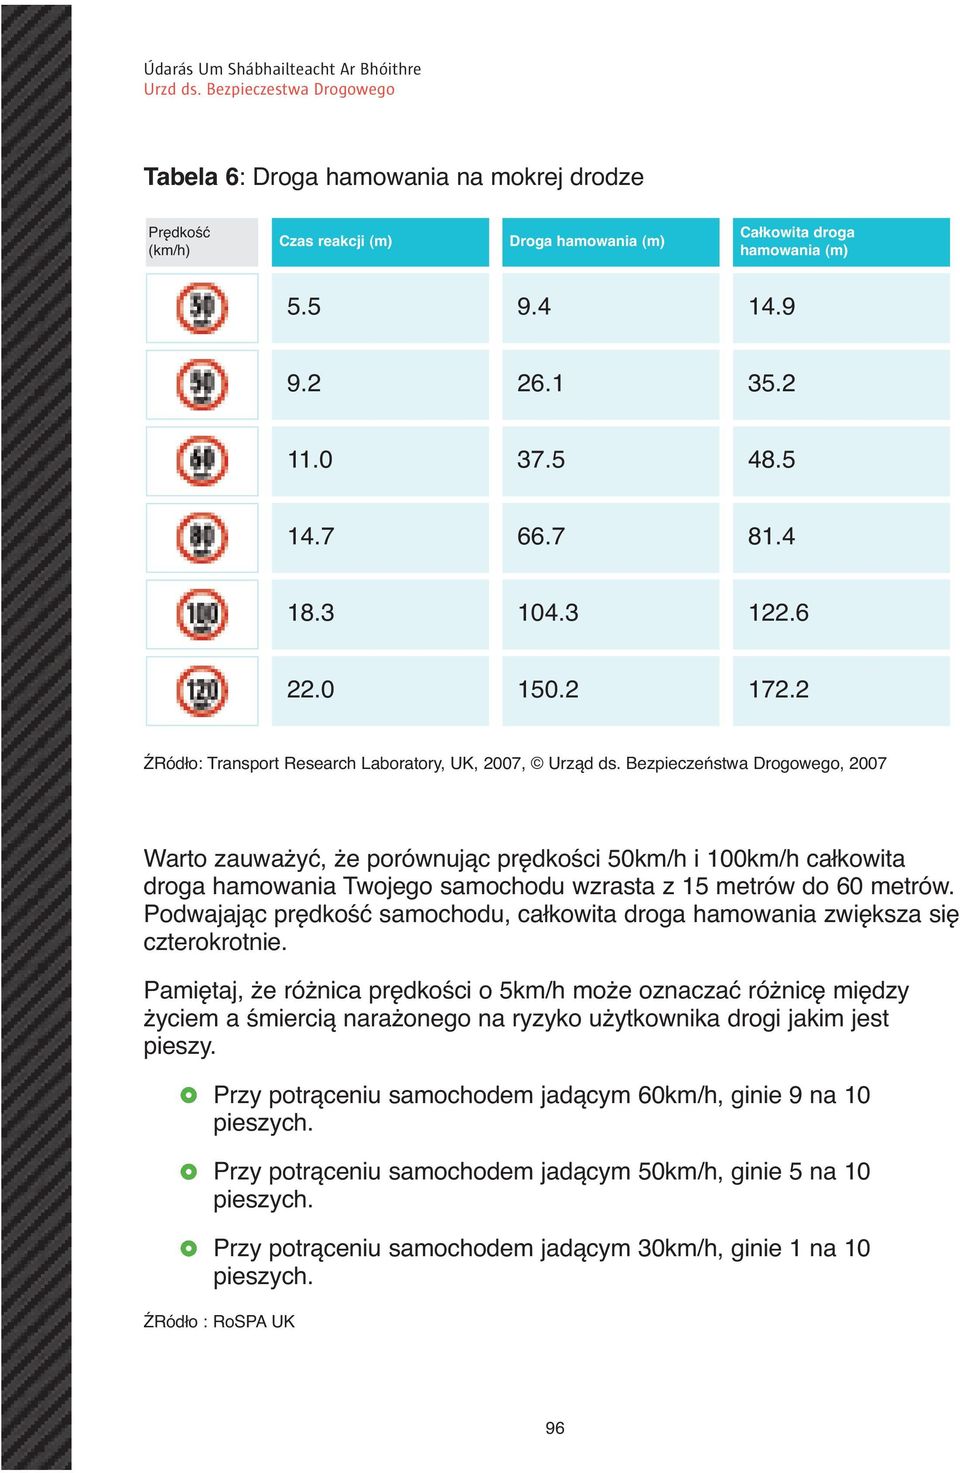 Bezpieczeństwa Drogowego, 2007 Warto zauważyć, że porównując prędkości 50km/h i 100km/h całkowita droga hamowania Twojego samochodu wzrasta z 15 metrów do 60 metrów.